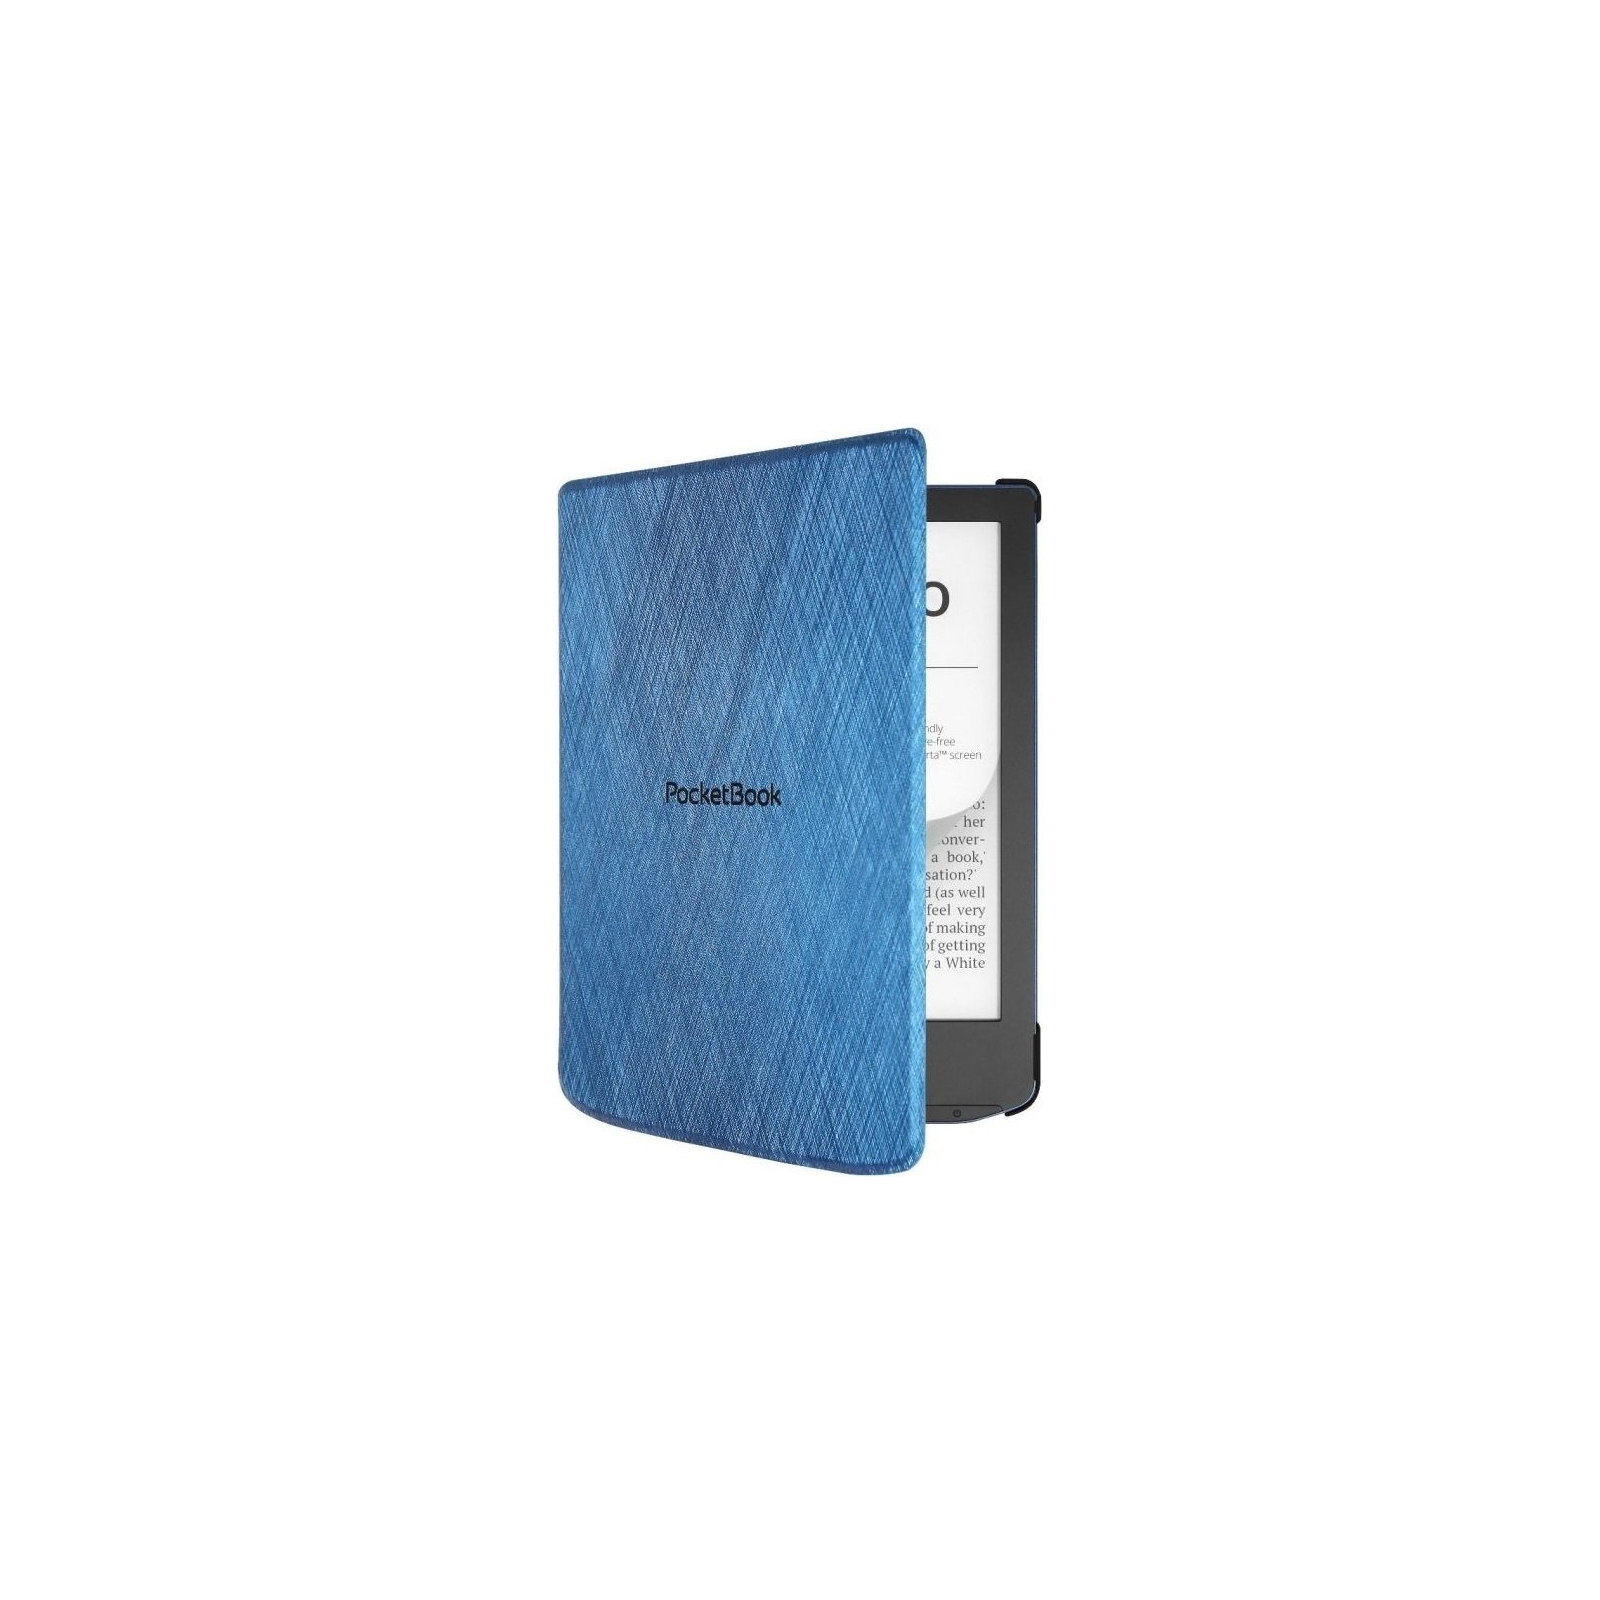 Чехол для электронной книги Pocketbook 629_634 Shell series blue (H-S-634-B-CIS) изображение 5